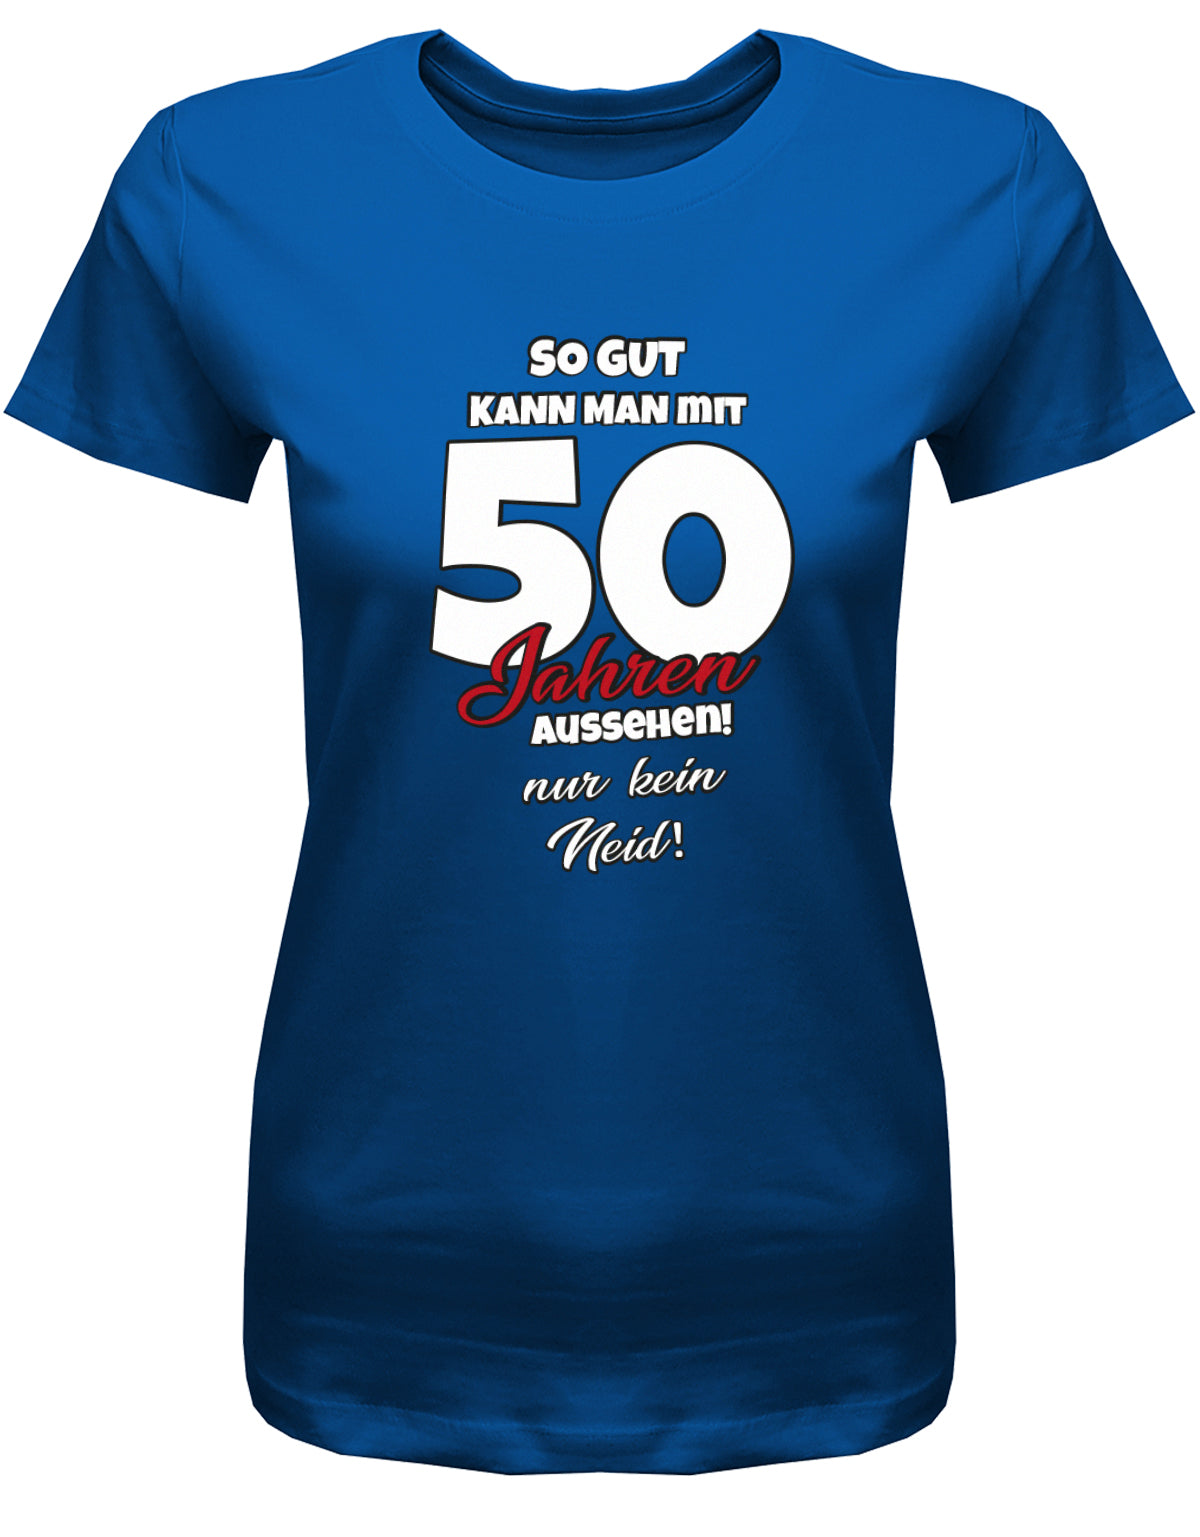 Lustiges T-Shirt zum 50 Geburtstag für die Frau Bedruckt mit So gut kann man mit 50 Jahren aussehen! Nur kein Neid! Royalblau